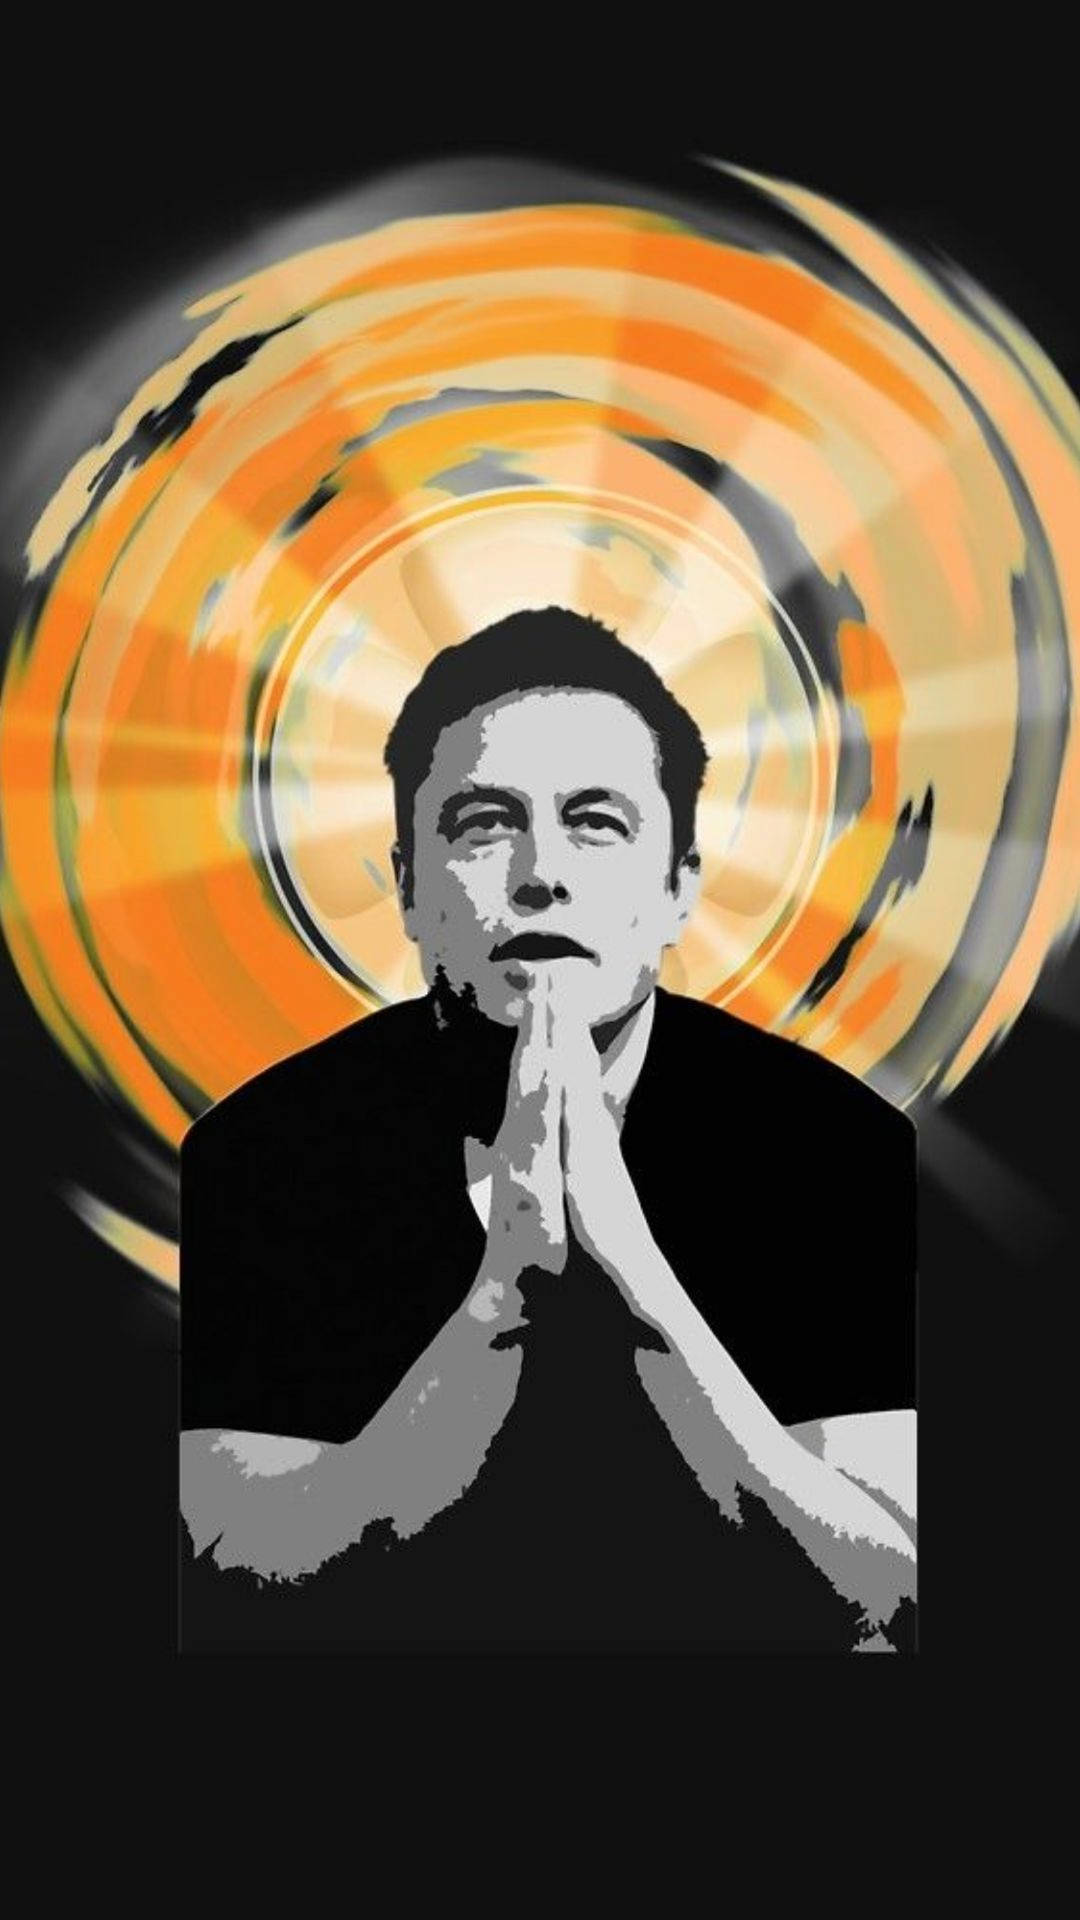 Caption: Visionary Innovator - Elon Musk Fan Art Wallpaper